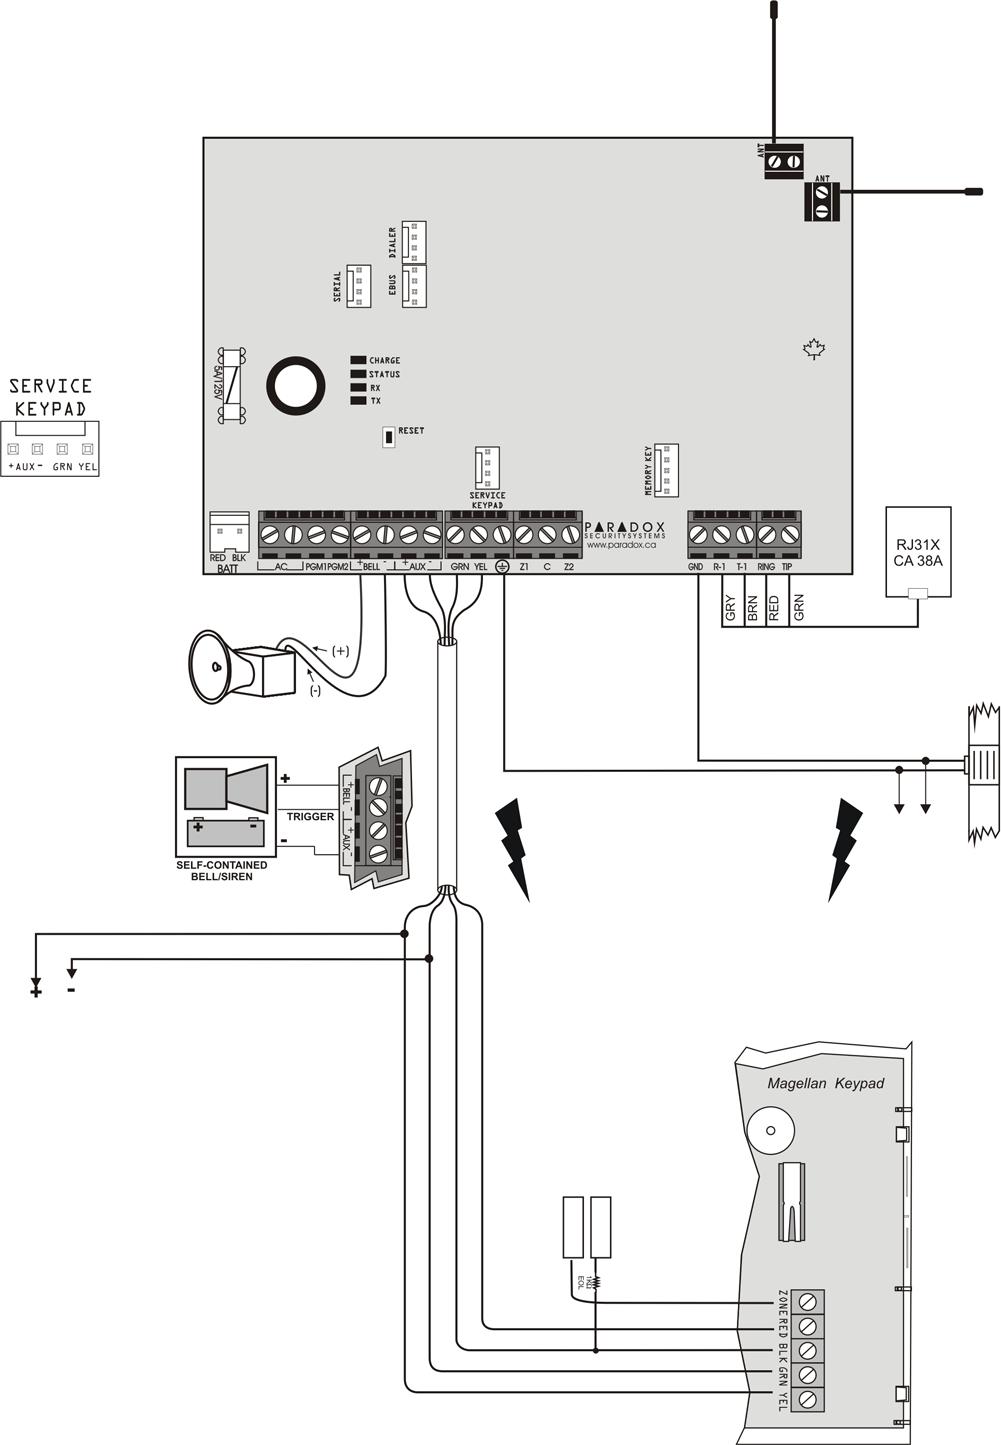 MG5000 PCB vázlat In-Field Firmware frissítéshez használatos, 306 Közvetlen kapcsolat kábellel Lásd, WinLoadhoz csatlakoztatás a 62. oldalon.